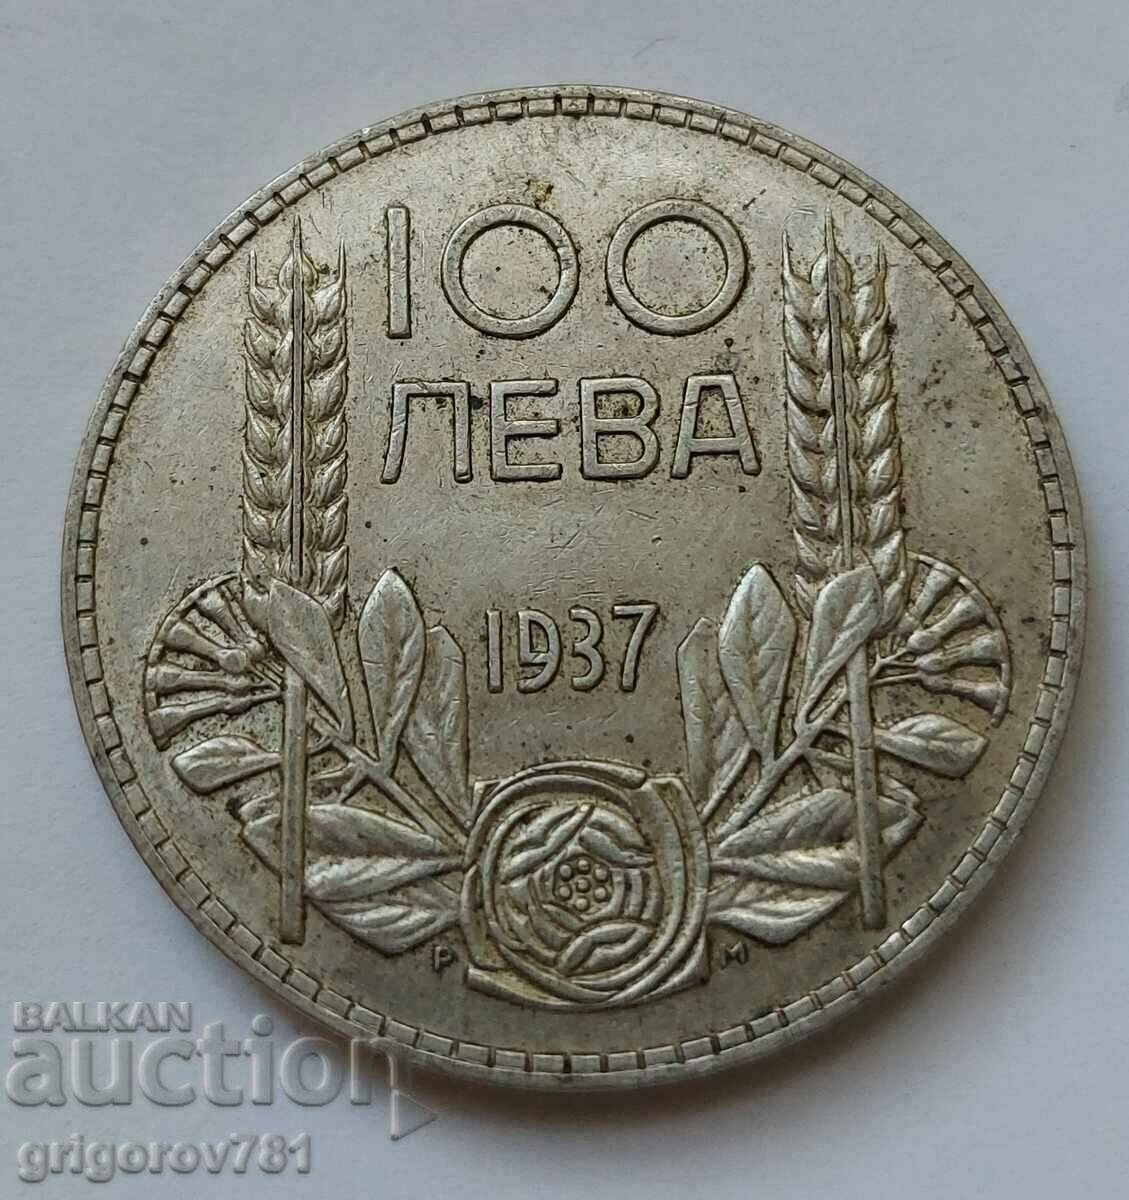 100 leva silver Bulgaria 1937 - silver coin #113